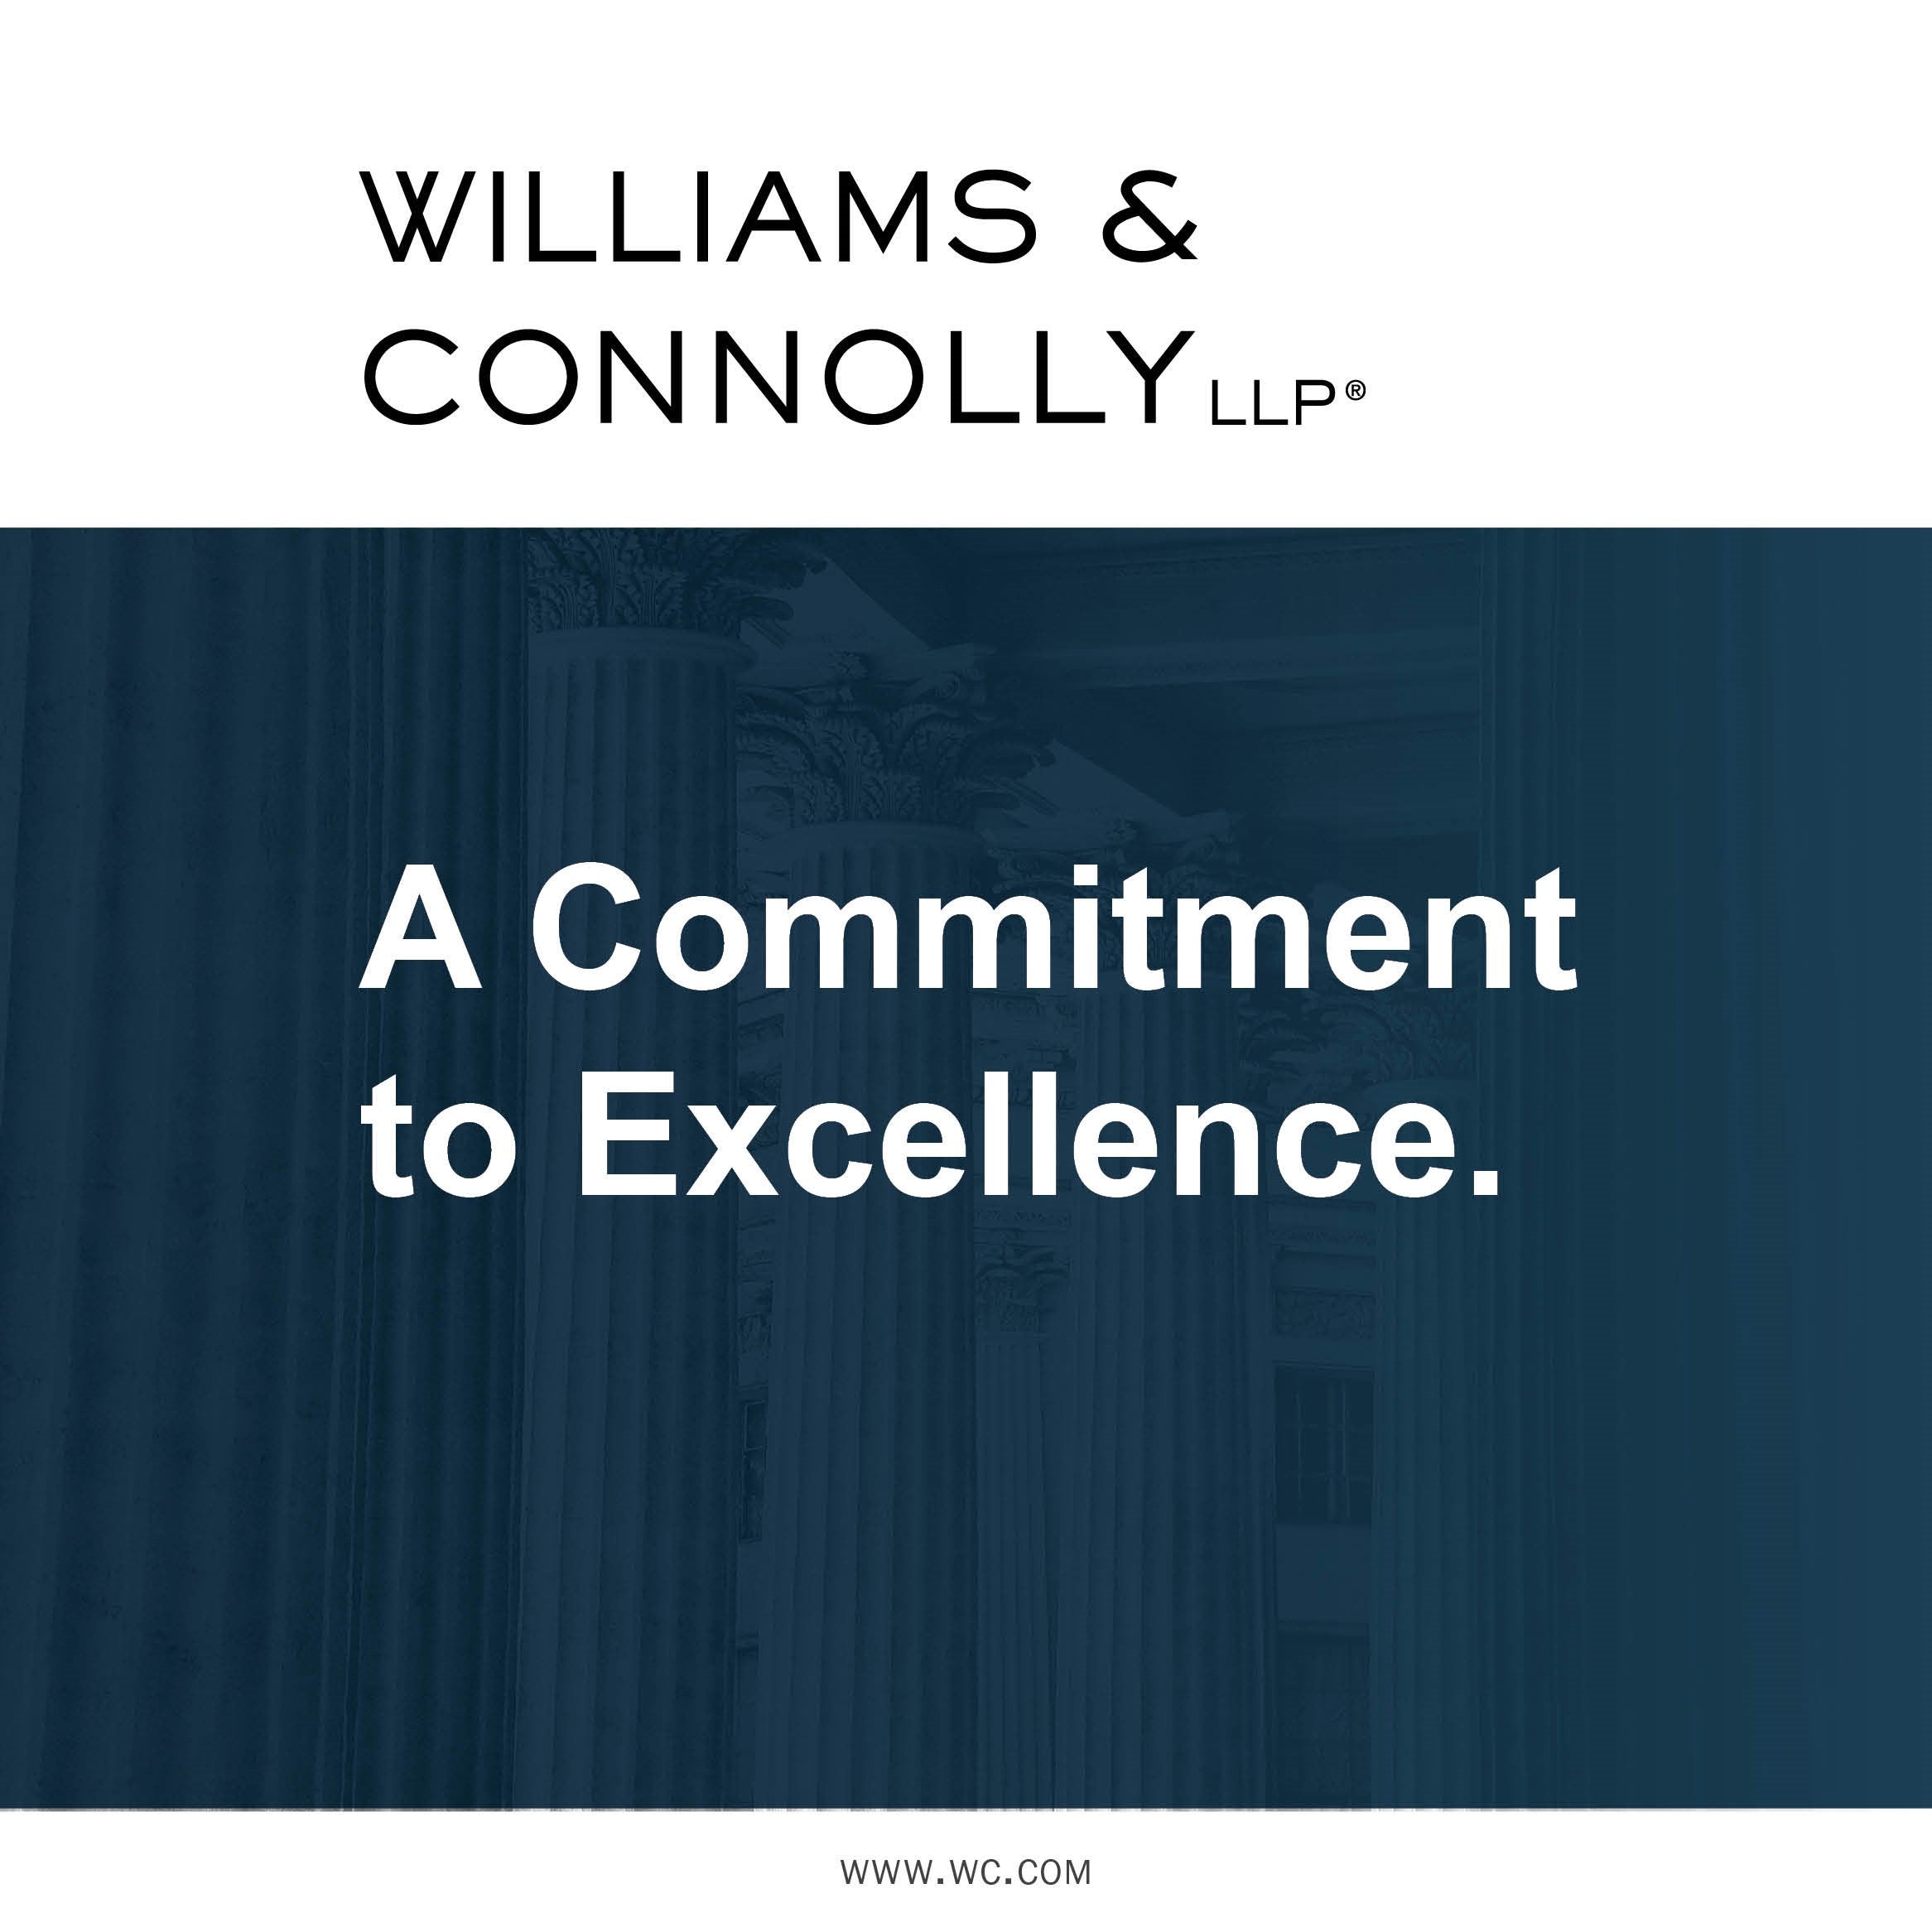 Williams & Connolly Ad